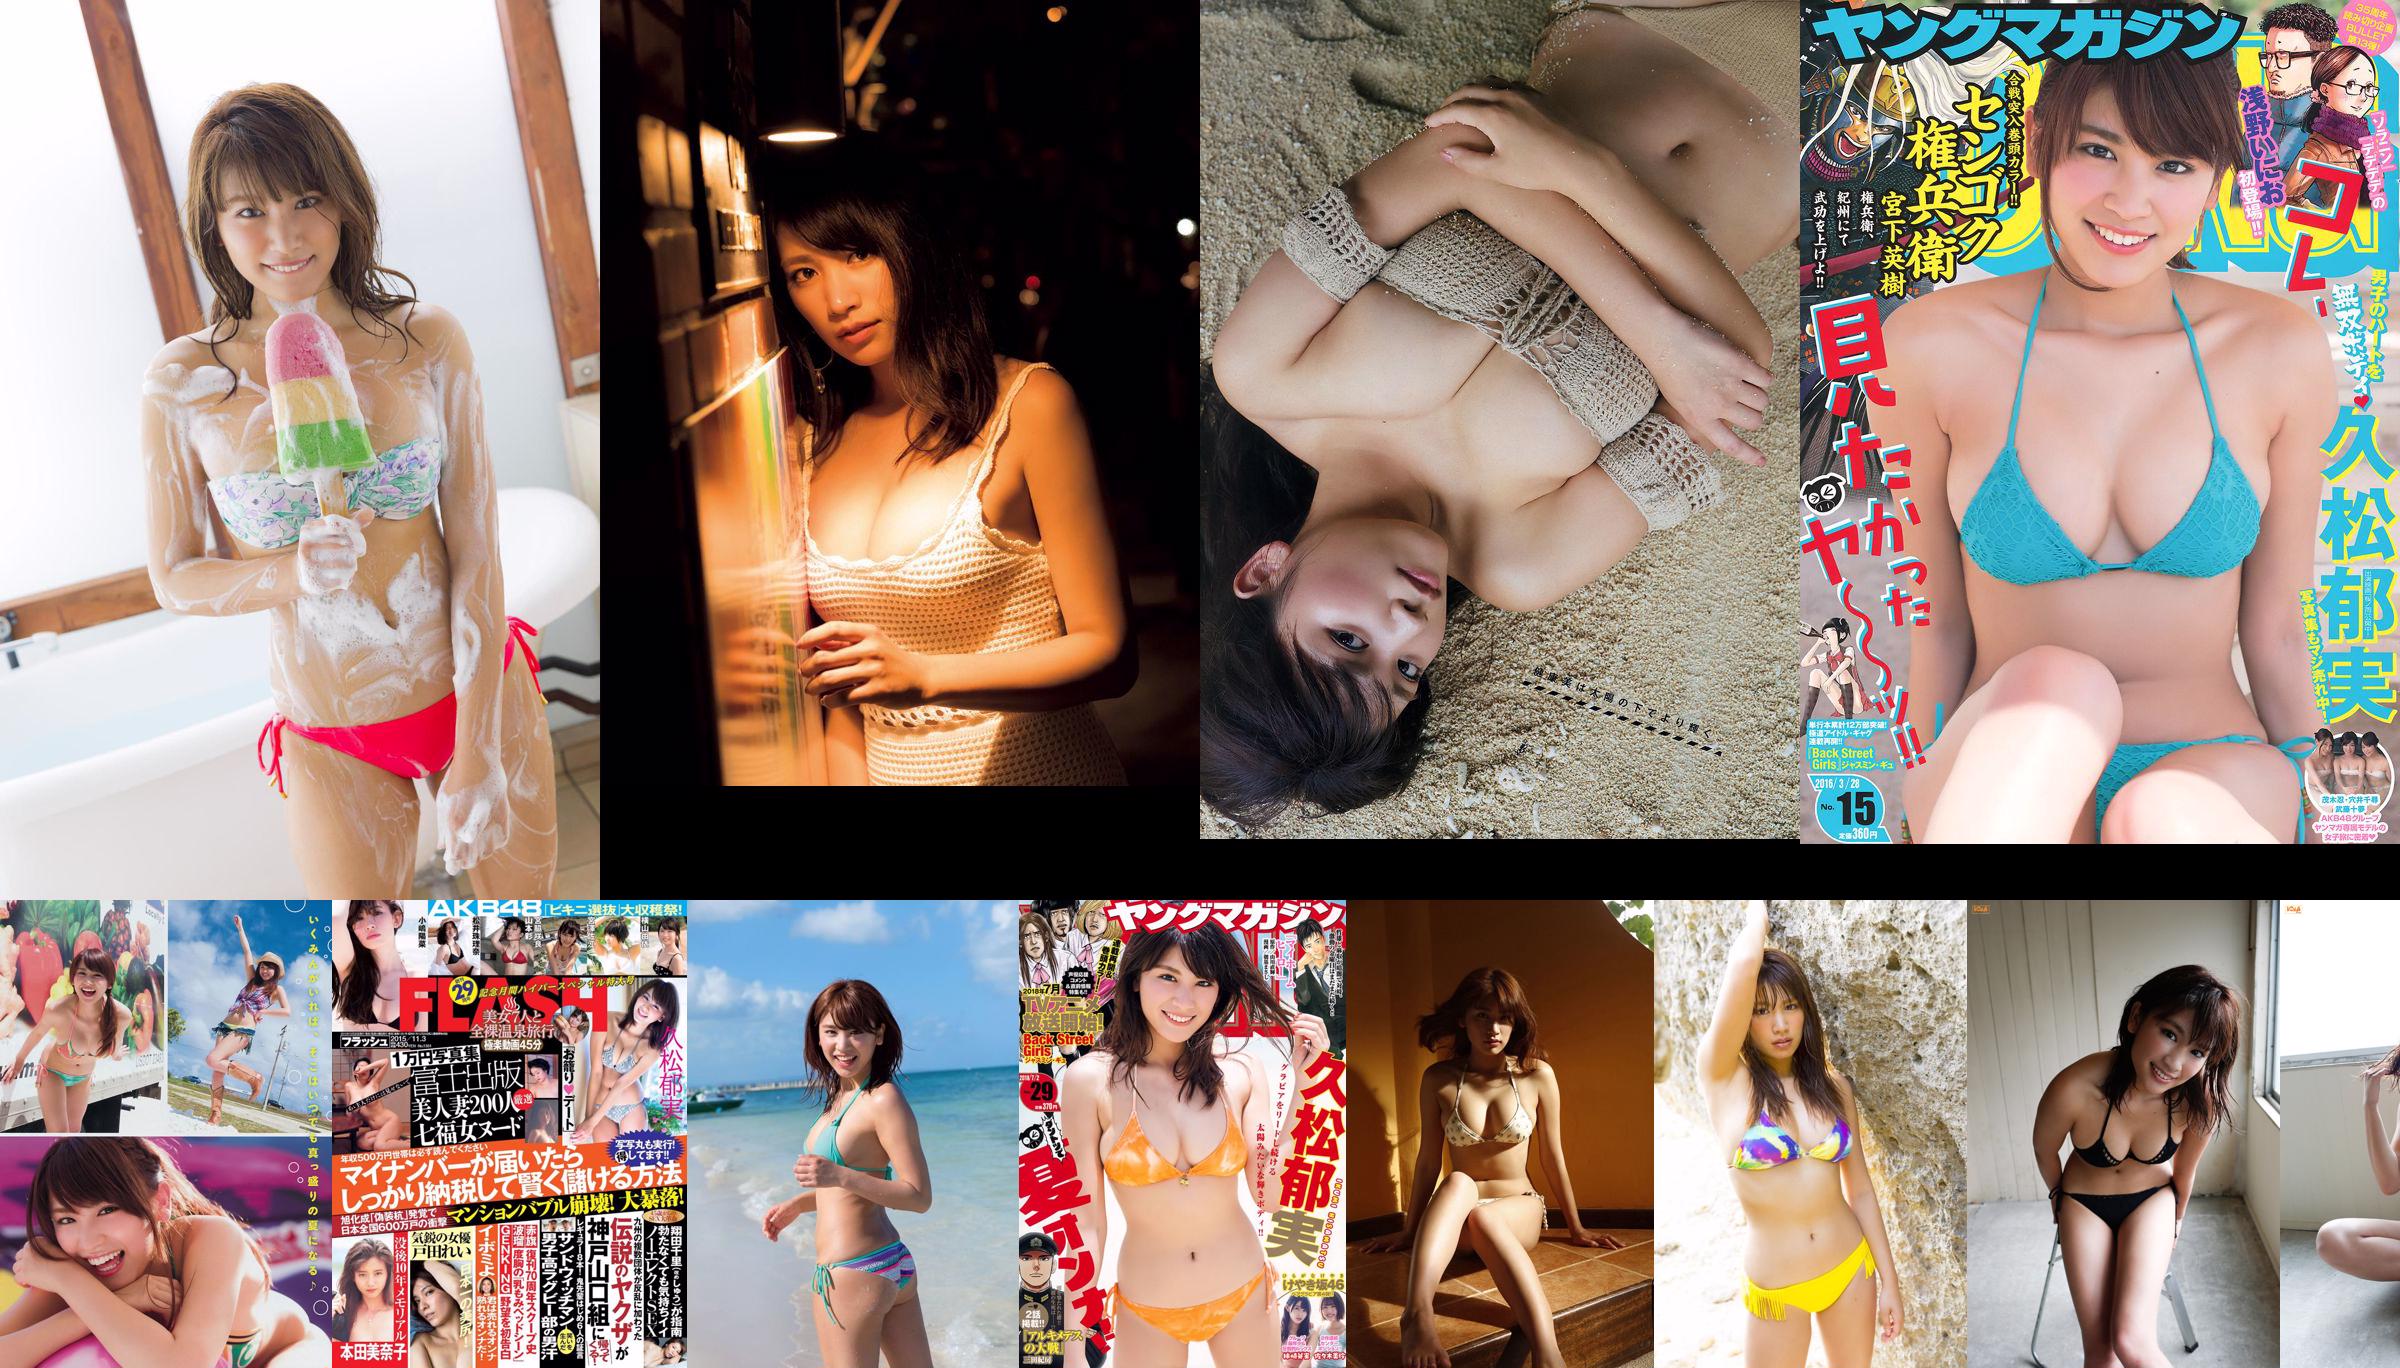 [FLASH] Ikumi Hisamatsu Sayaka Isoyama Saki Suzuki 2015.12.01 Fotografía No.1ae8cc Página 5